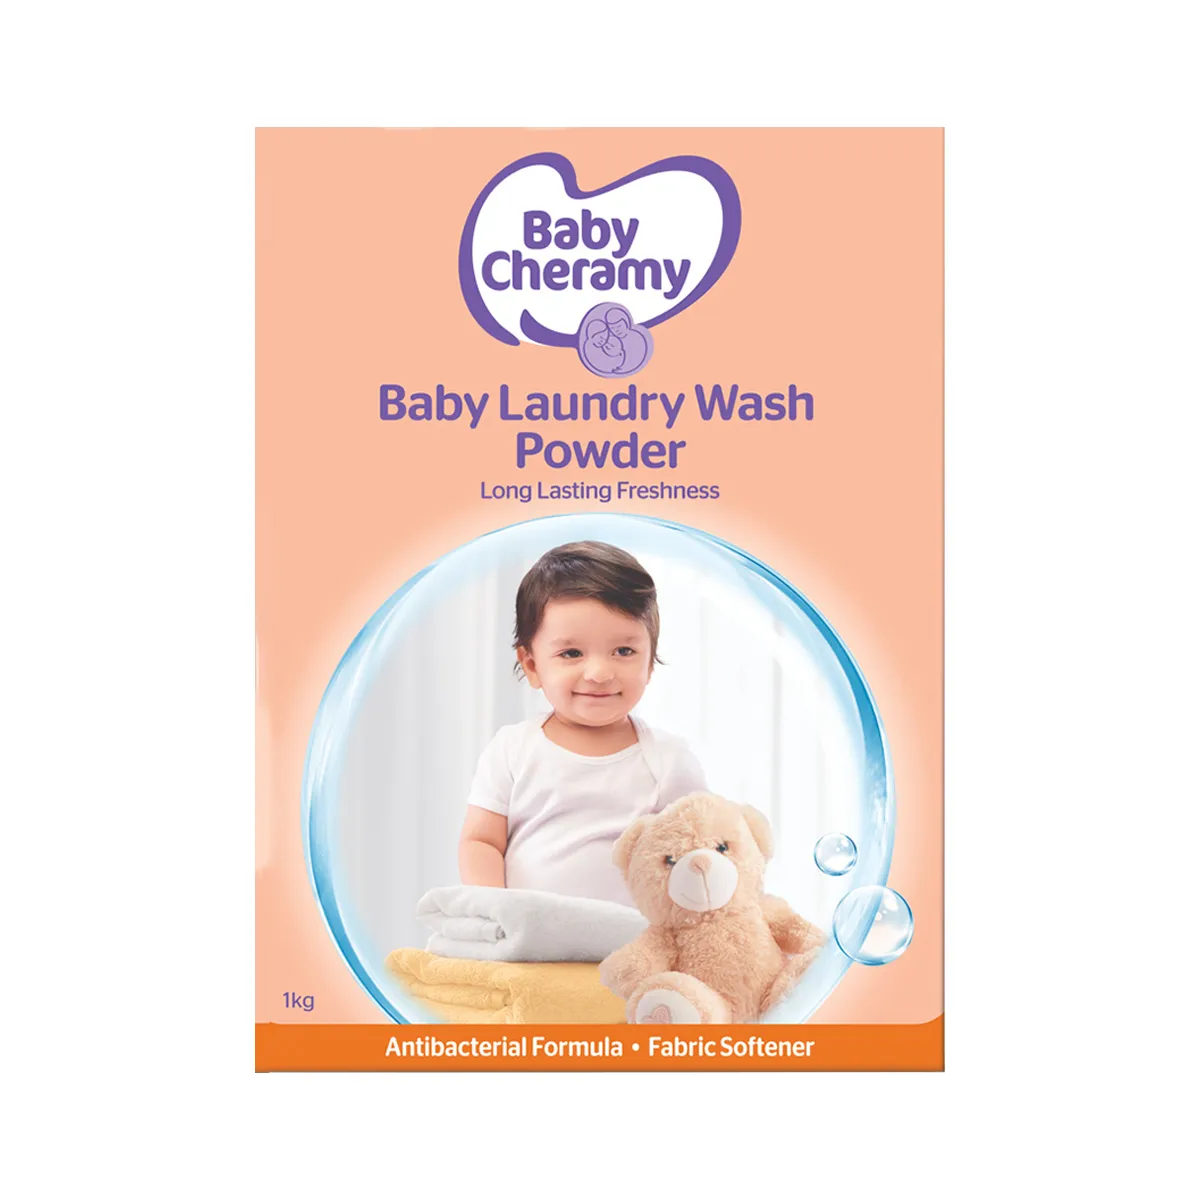 Baby Cheramy Baby Laundry Wash Powder 1kg